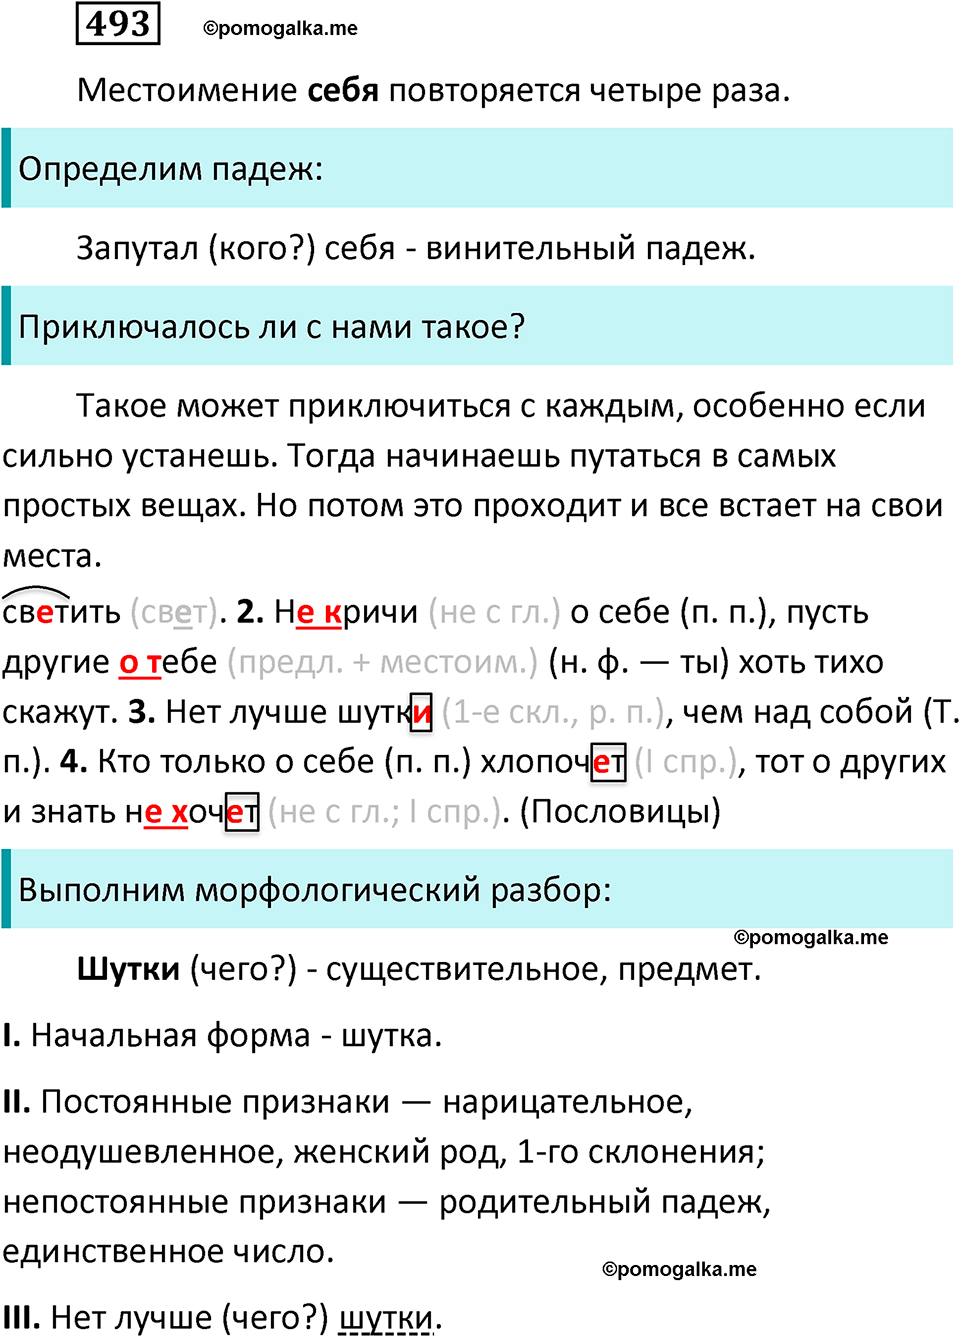 разбор упражнения №493 русский язык 6 класс Баранов, Ладыженская, Тростенцова 2020 год